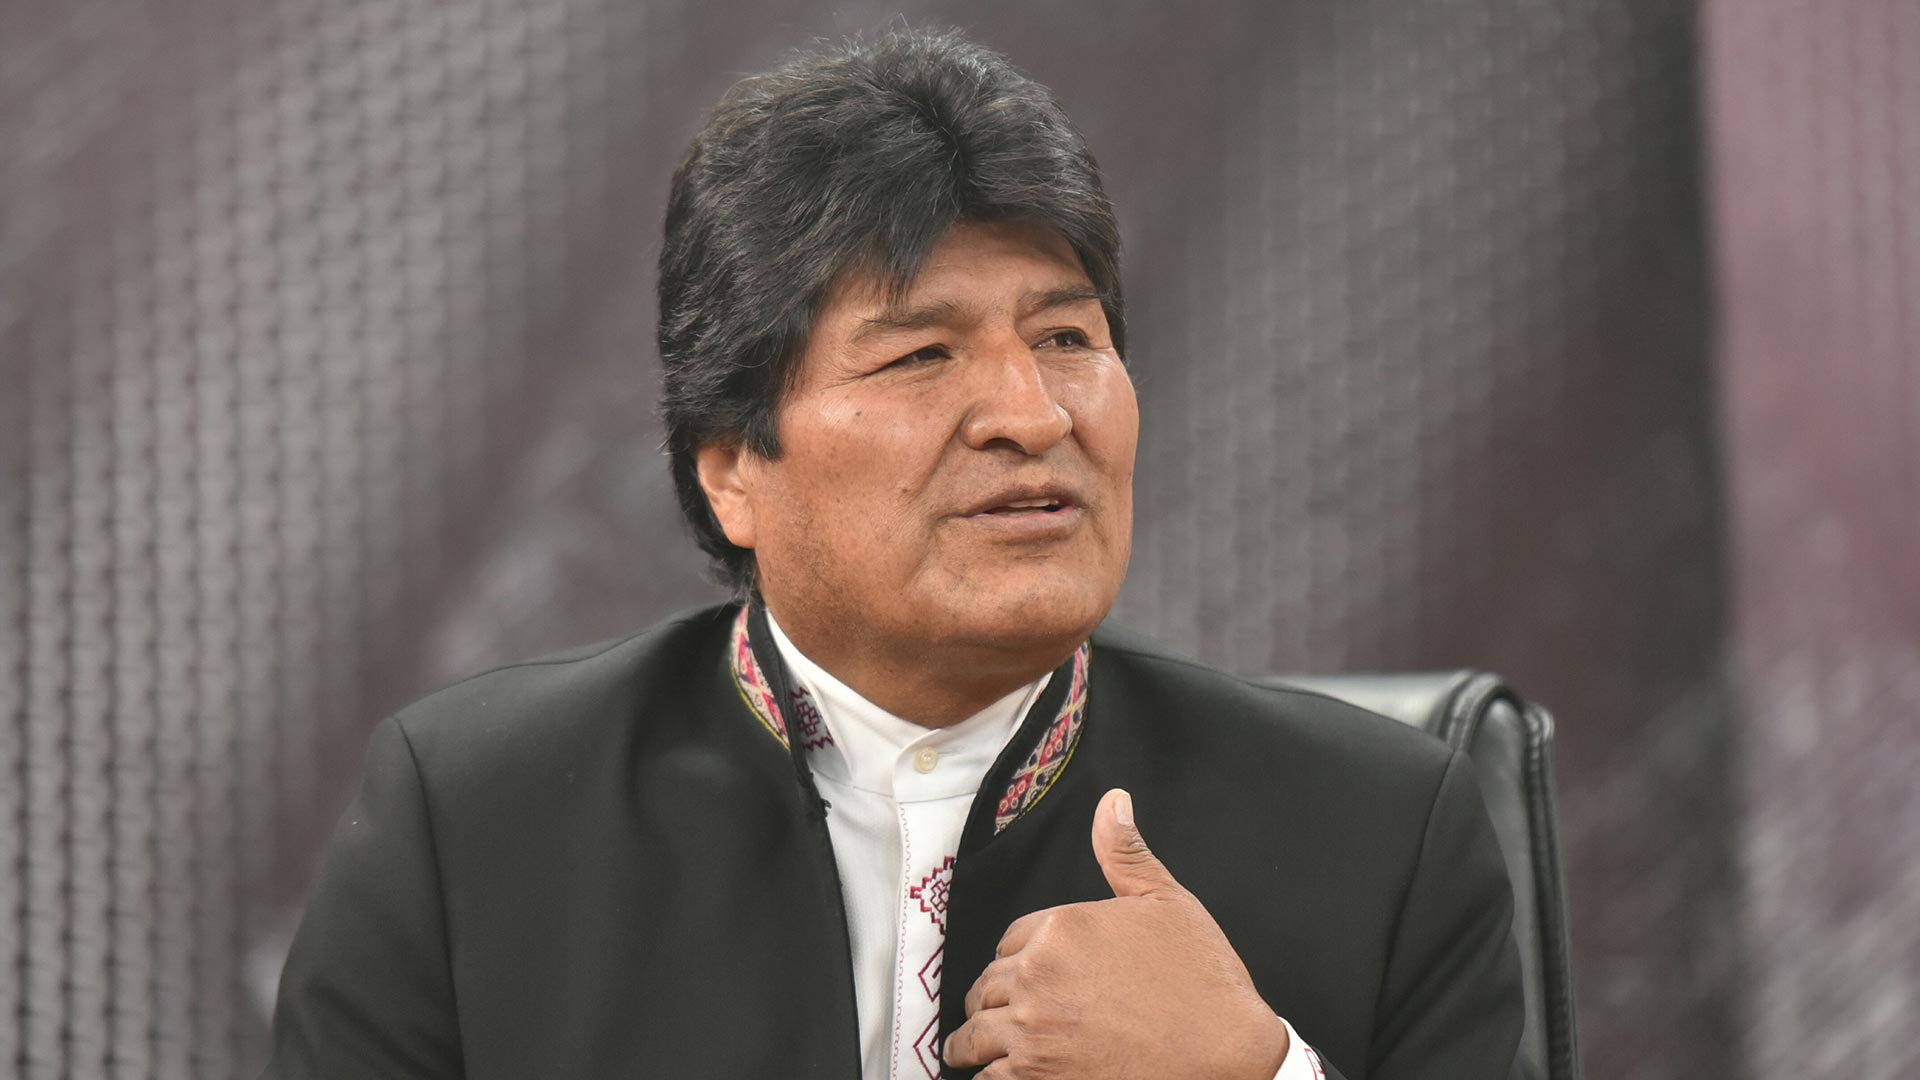 Evo Morales rompe el récord de duración en la presidencia de Bolivia